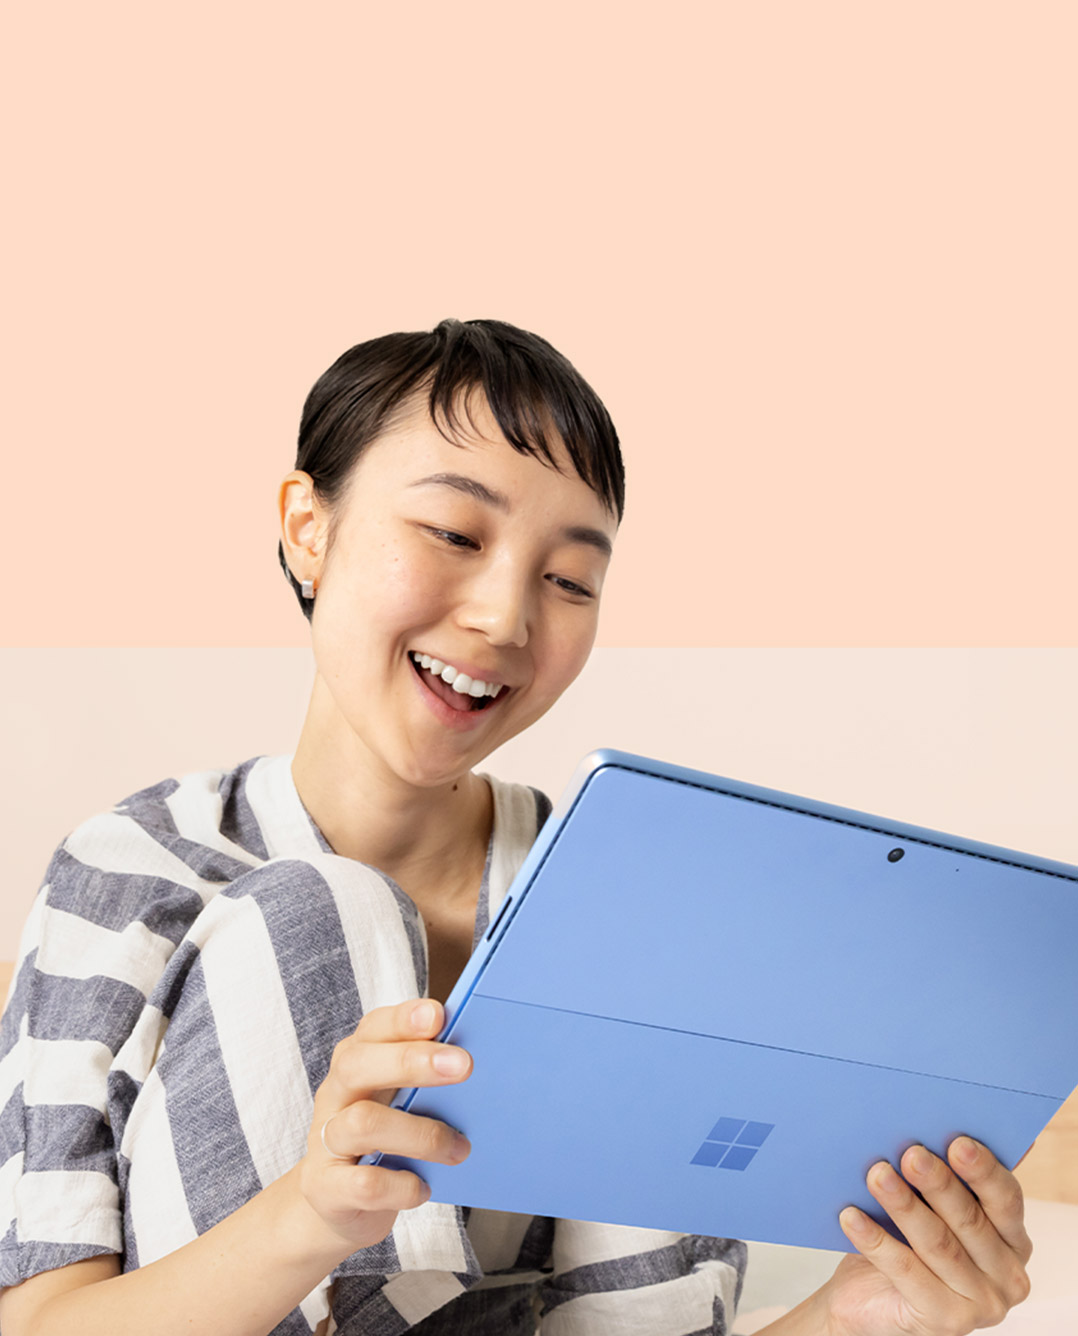 Surface 슬림 펜 2를 든 여성이 Surface Pro 9(사파이어)을 보면서 웃고 있습니다.